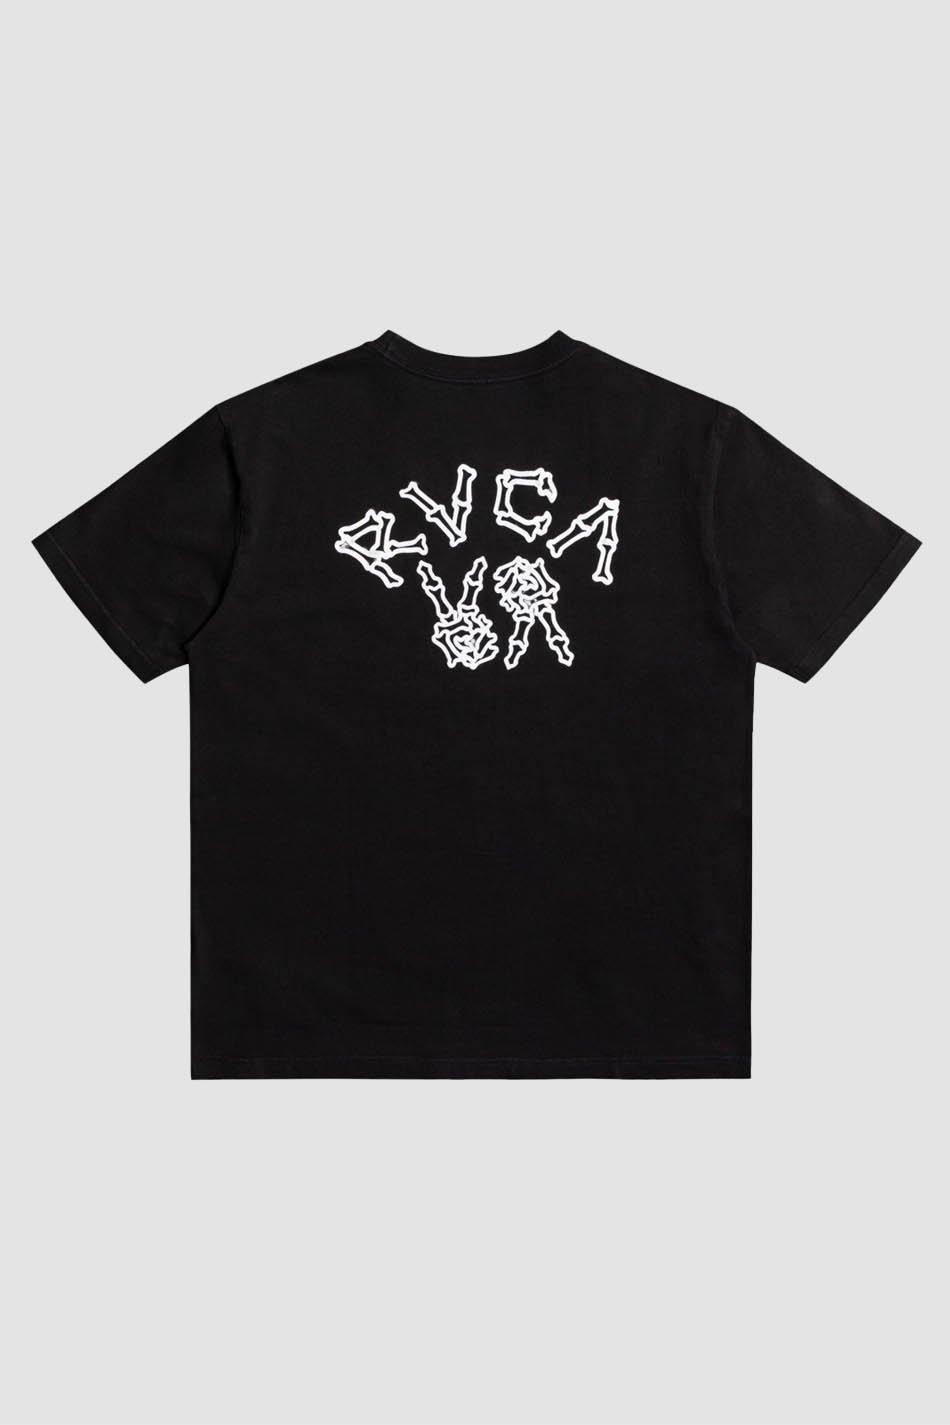 Camiseta RVCA Peace Bones Black